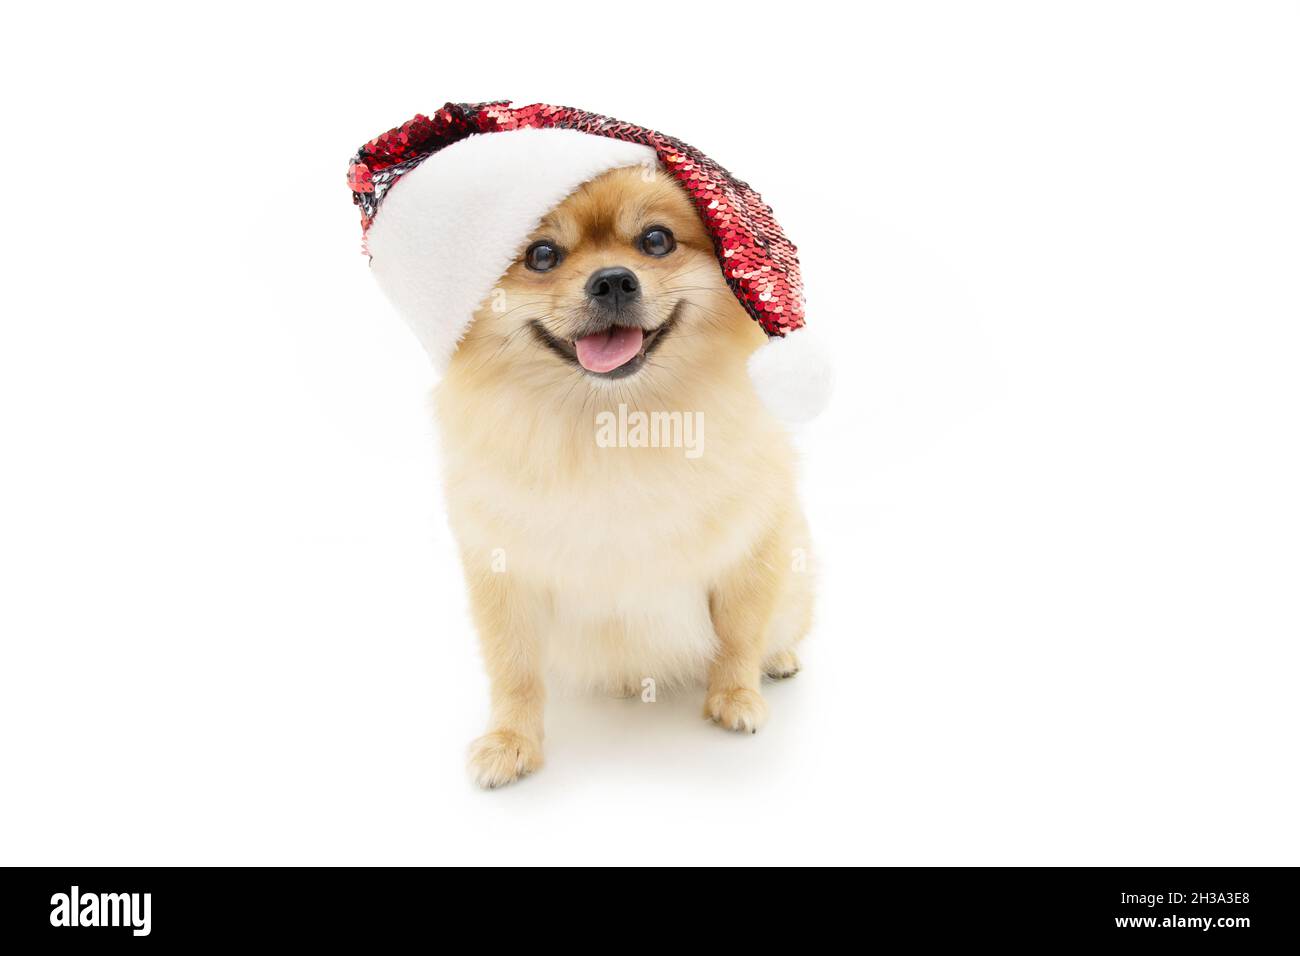 Portrait joie chien pomeranian célébrant noël faire un visage drôle portant un chapeau de père noël.Isolé sur fond blanc Banque D'Images